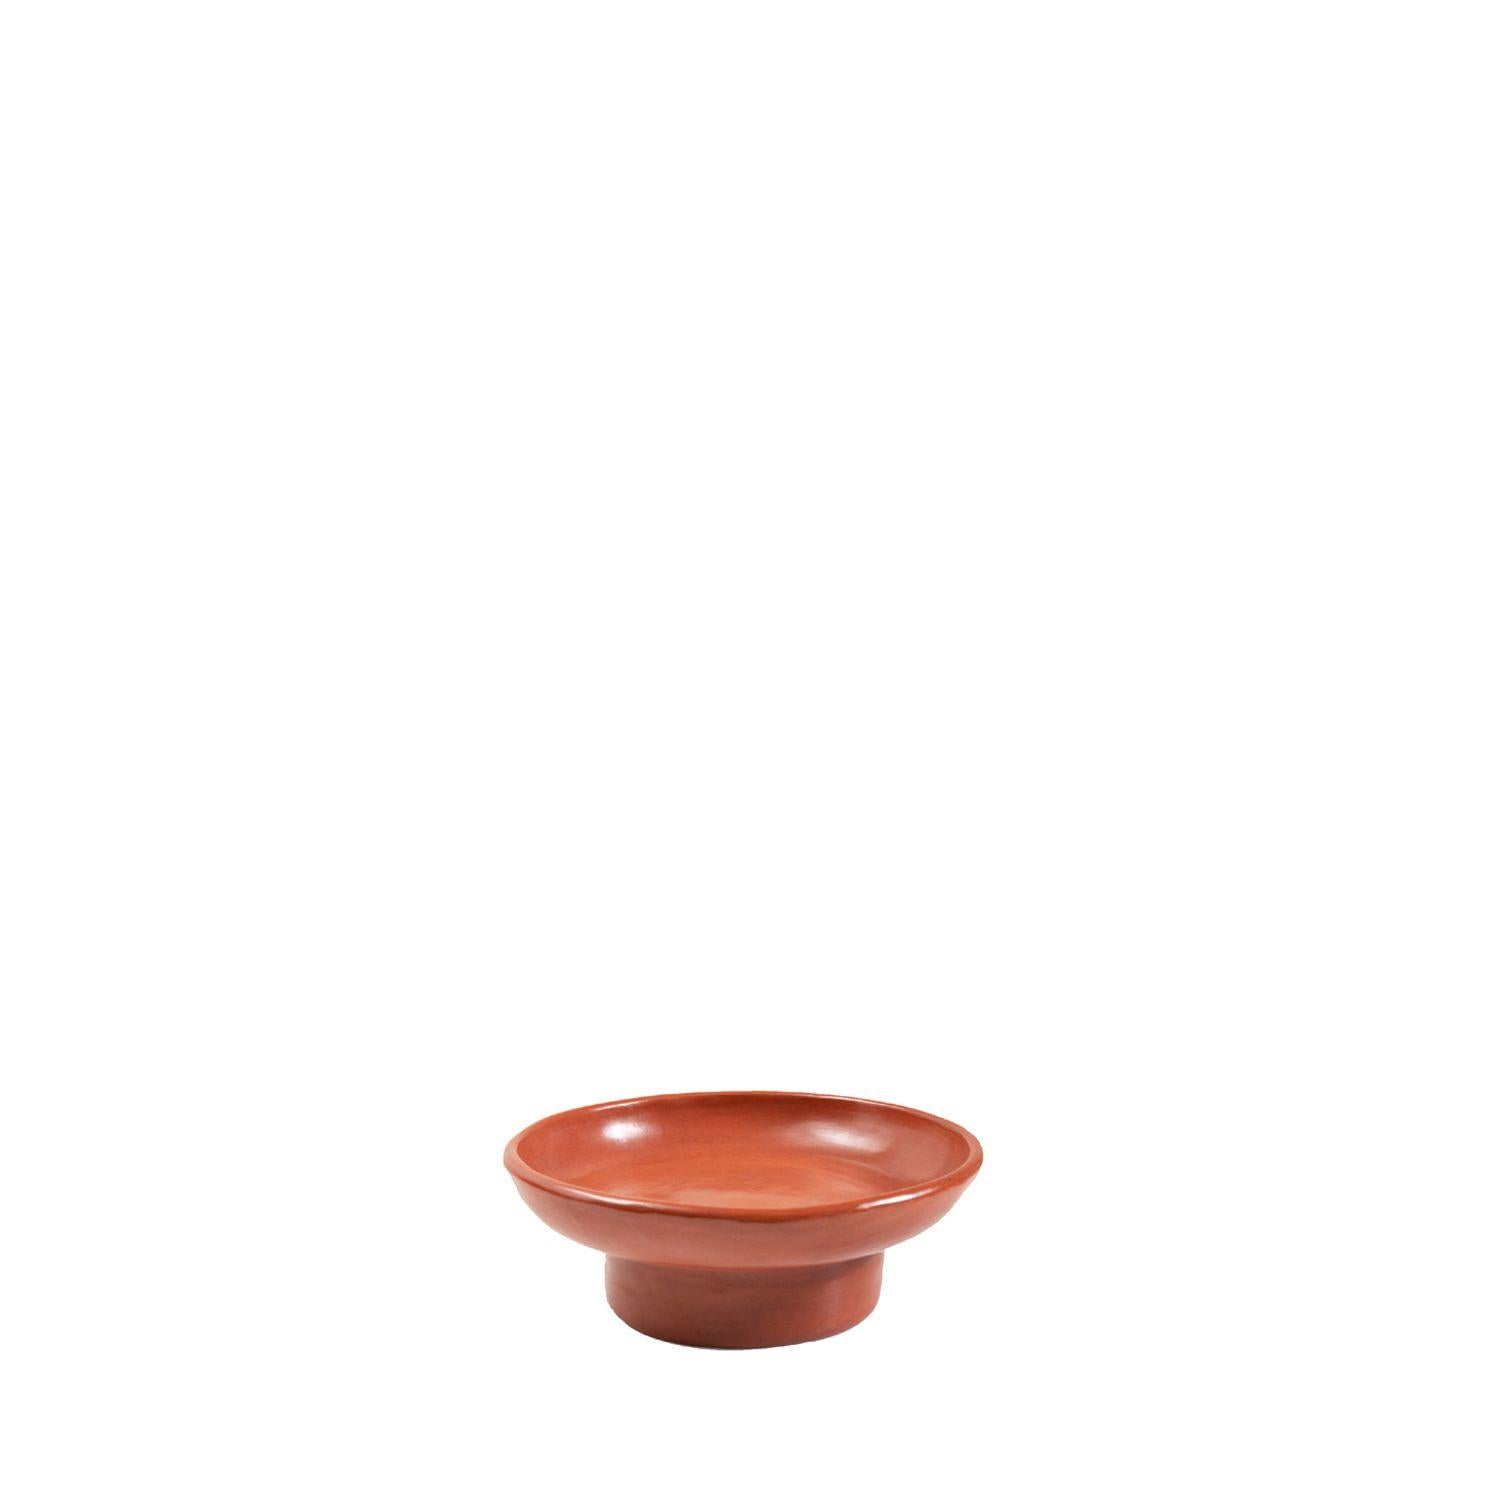 Rotes Minitablett 2 von Sebastian Herkner
MATERIALIEN: Hitzebeständige rote Keramik. 
Technik: Glasiert. Im Ofen gegart und mit Halbedelsteinen poliert. 
Abmessungen: Durchmesser 25 cm x Höhe 9 cm 
Erhältlich in den Größen groß und klein.

Diese